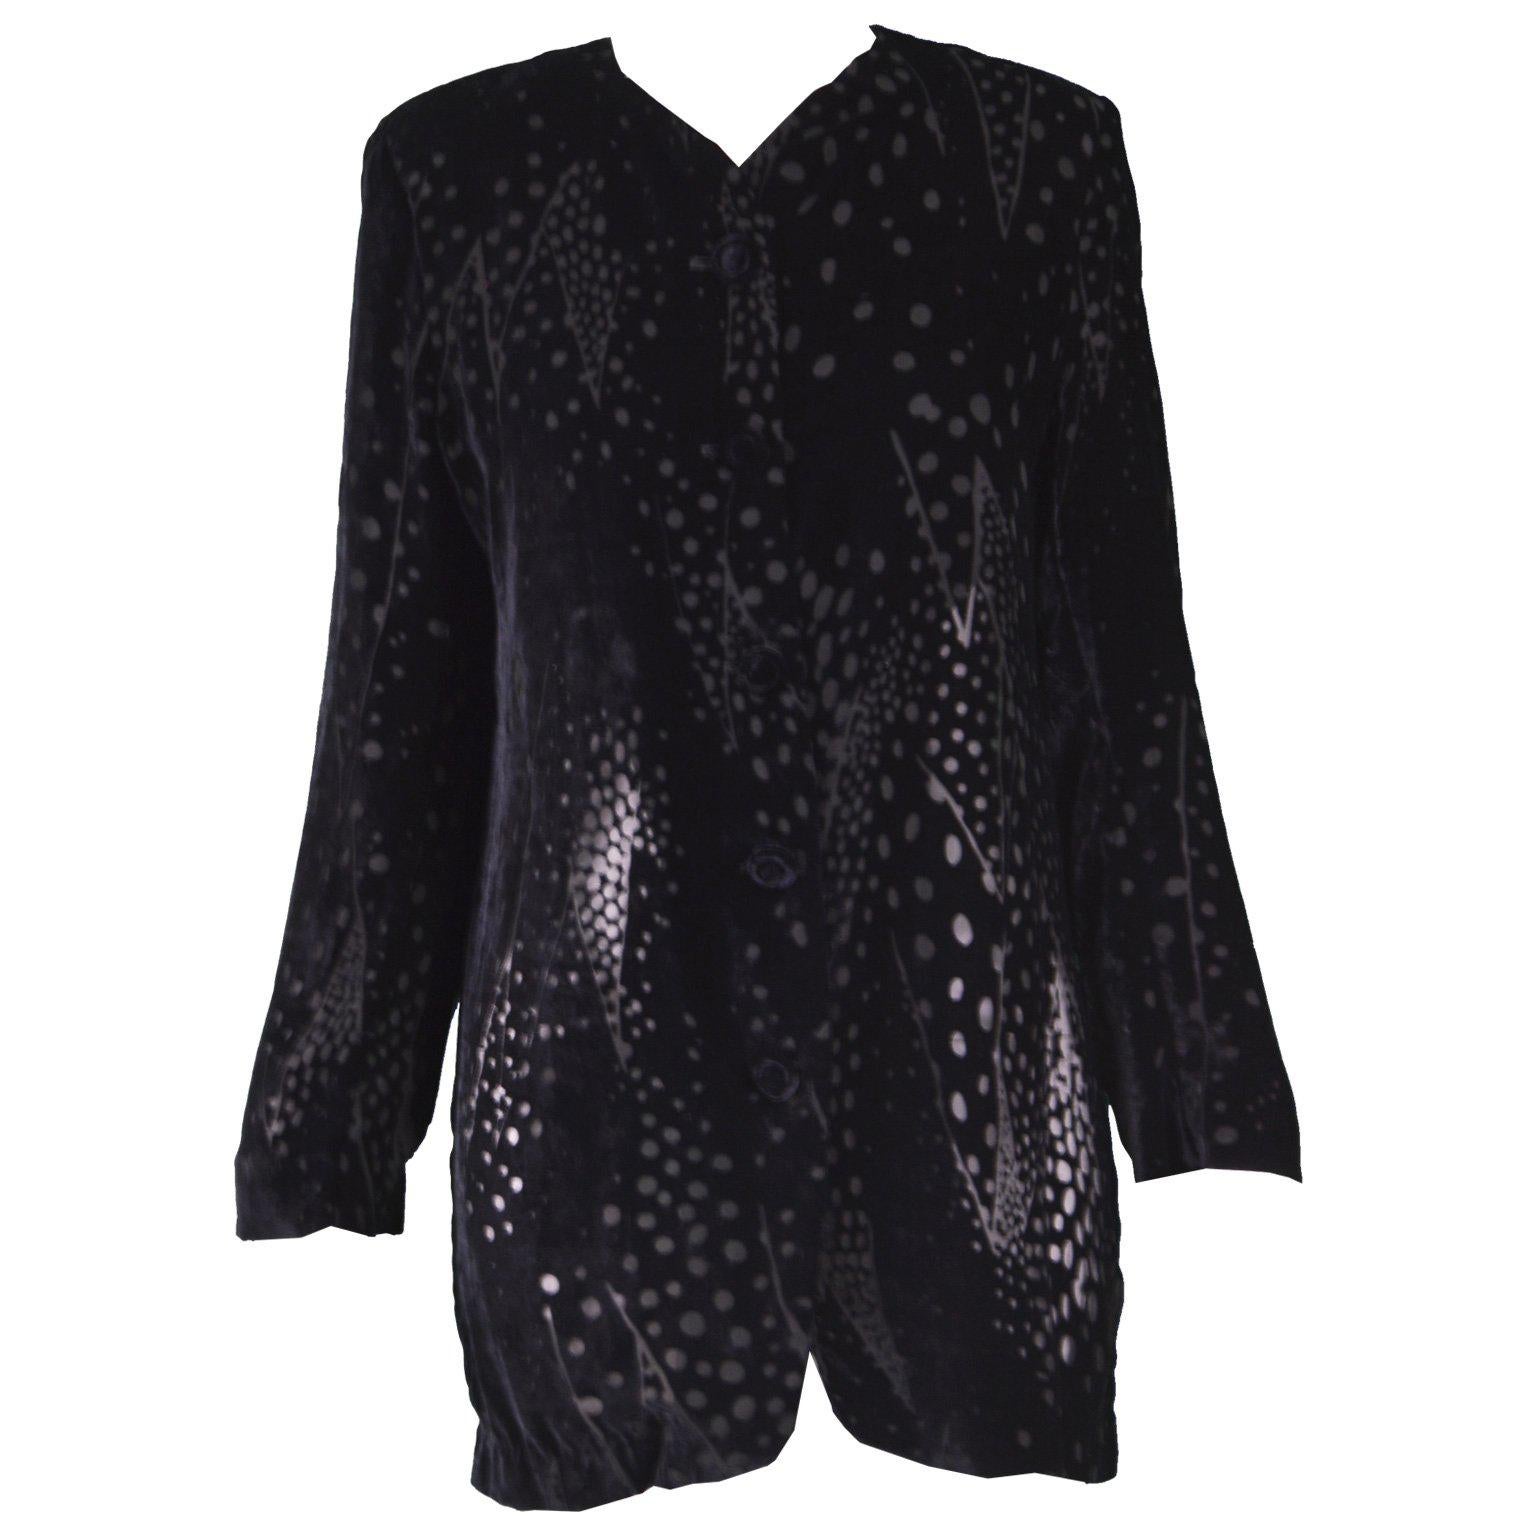 Georgina von Etzdorf Black Silk Devore Burnout Velvet Evening Jacket, 1980s For Sale